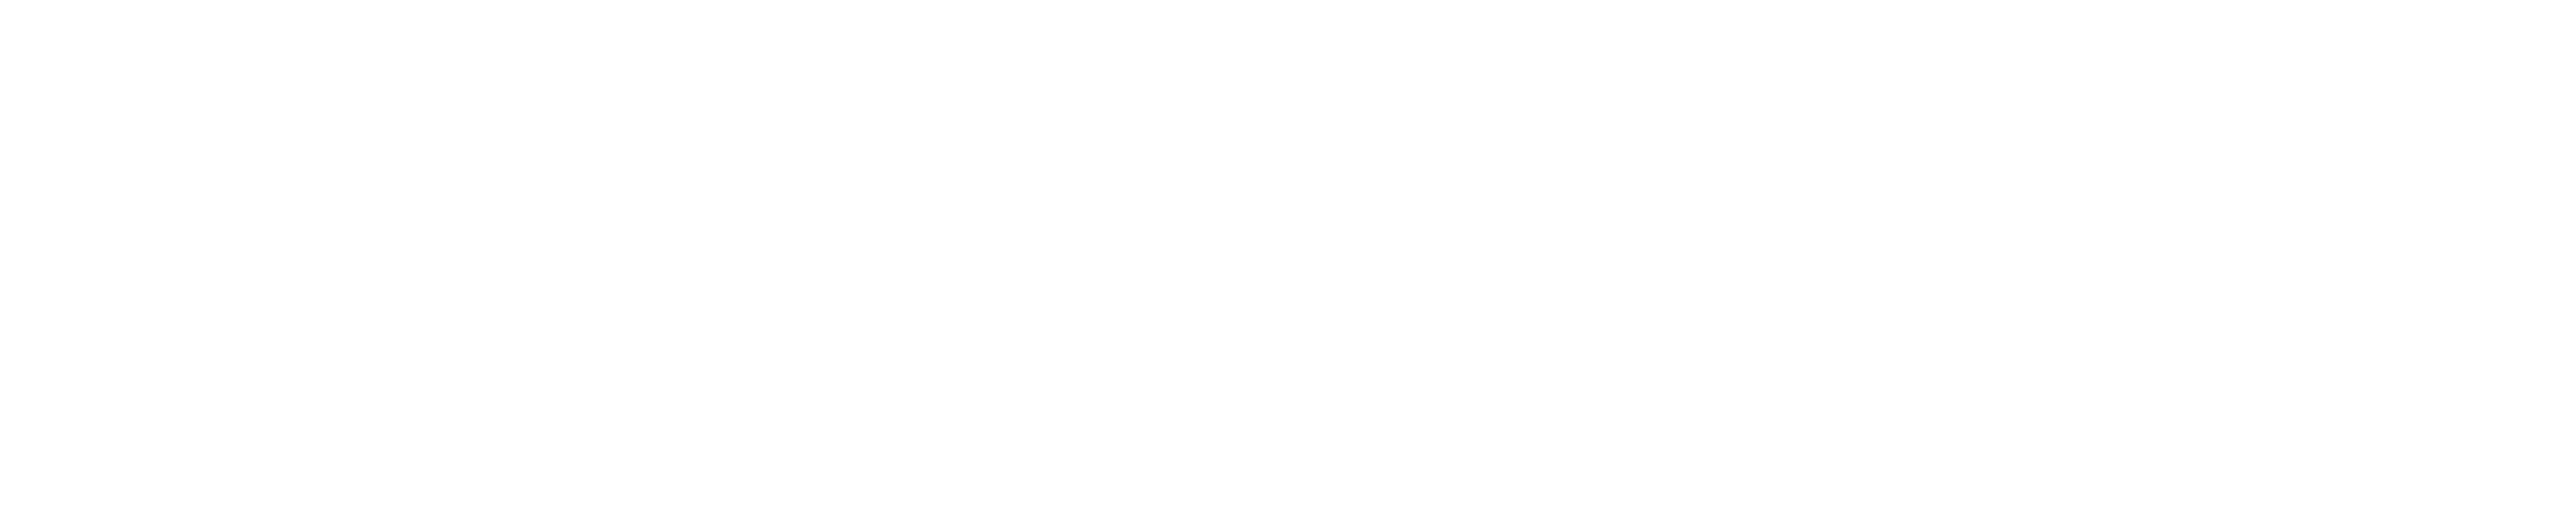 Angelone-white-logo